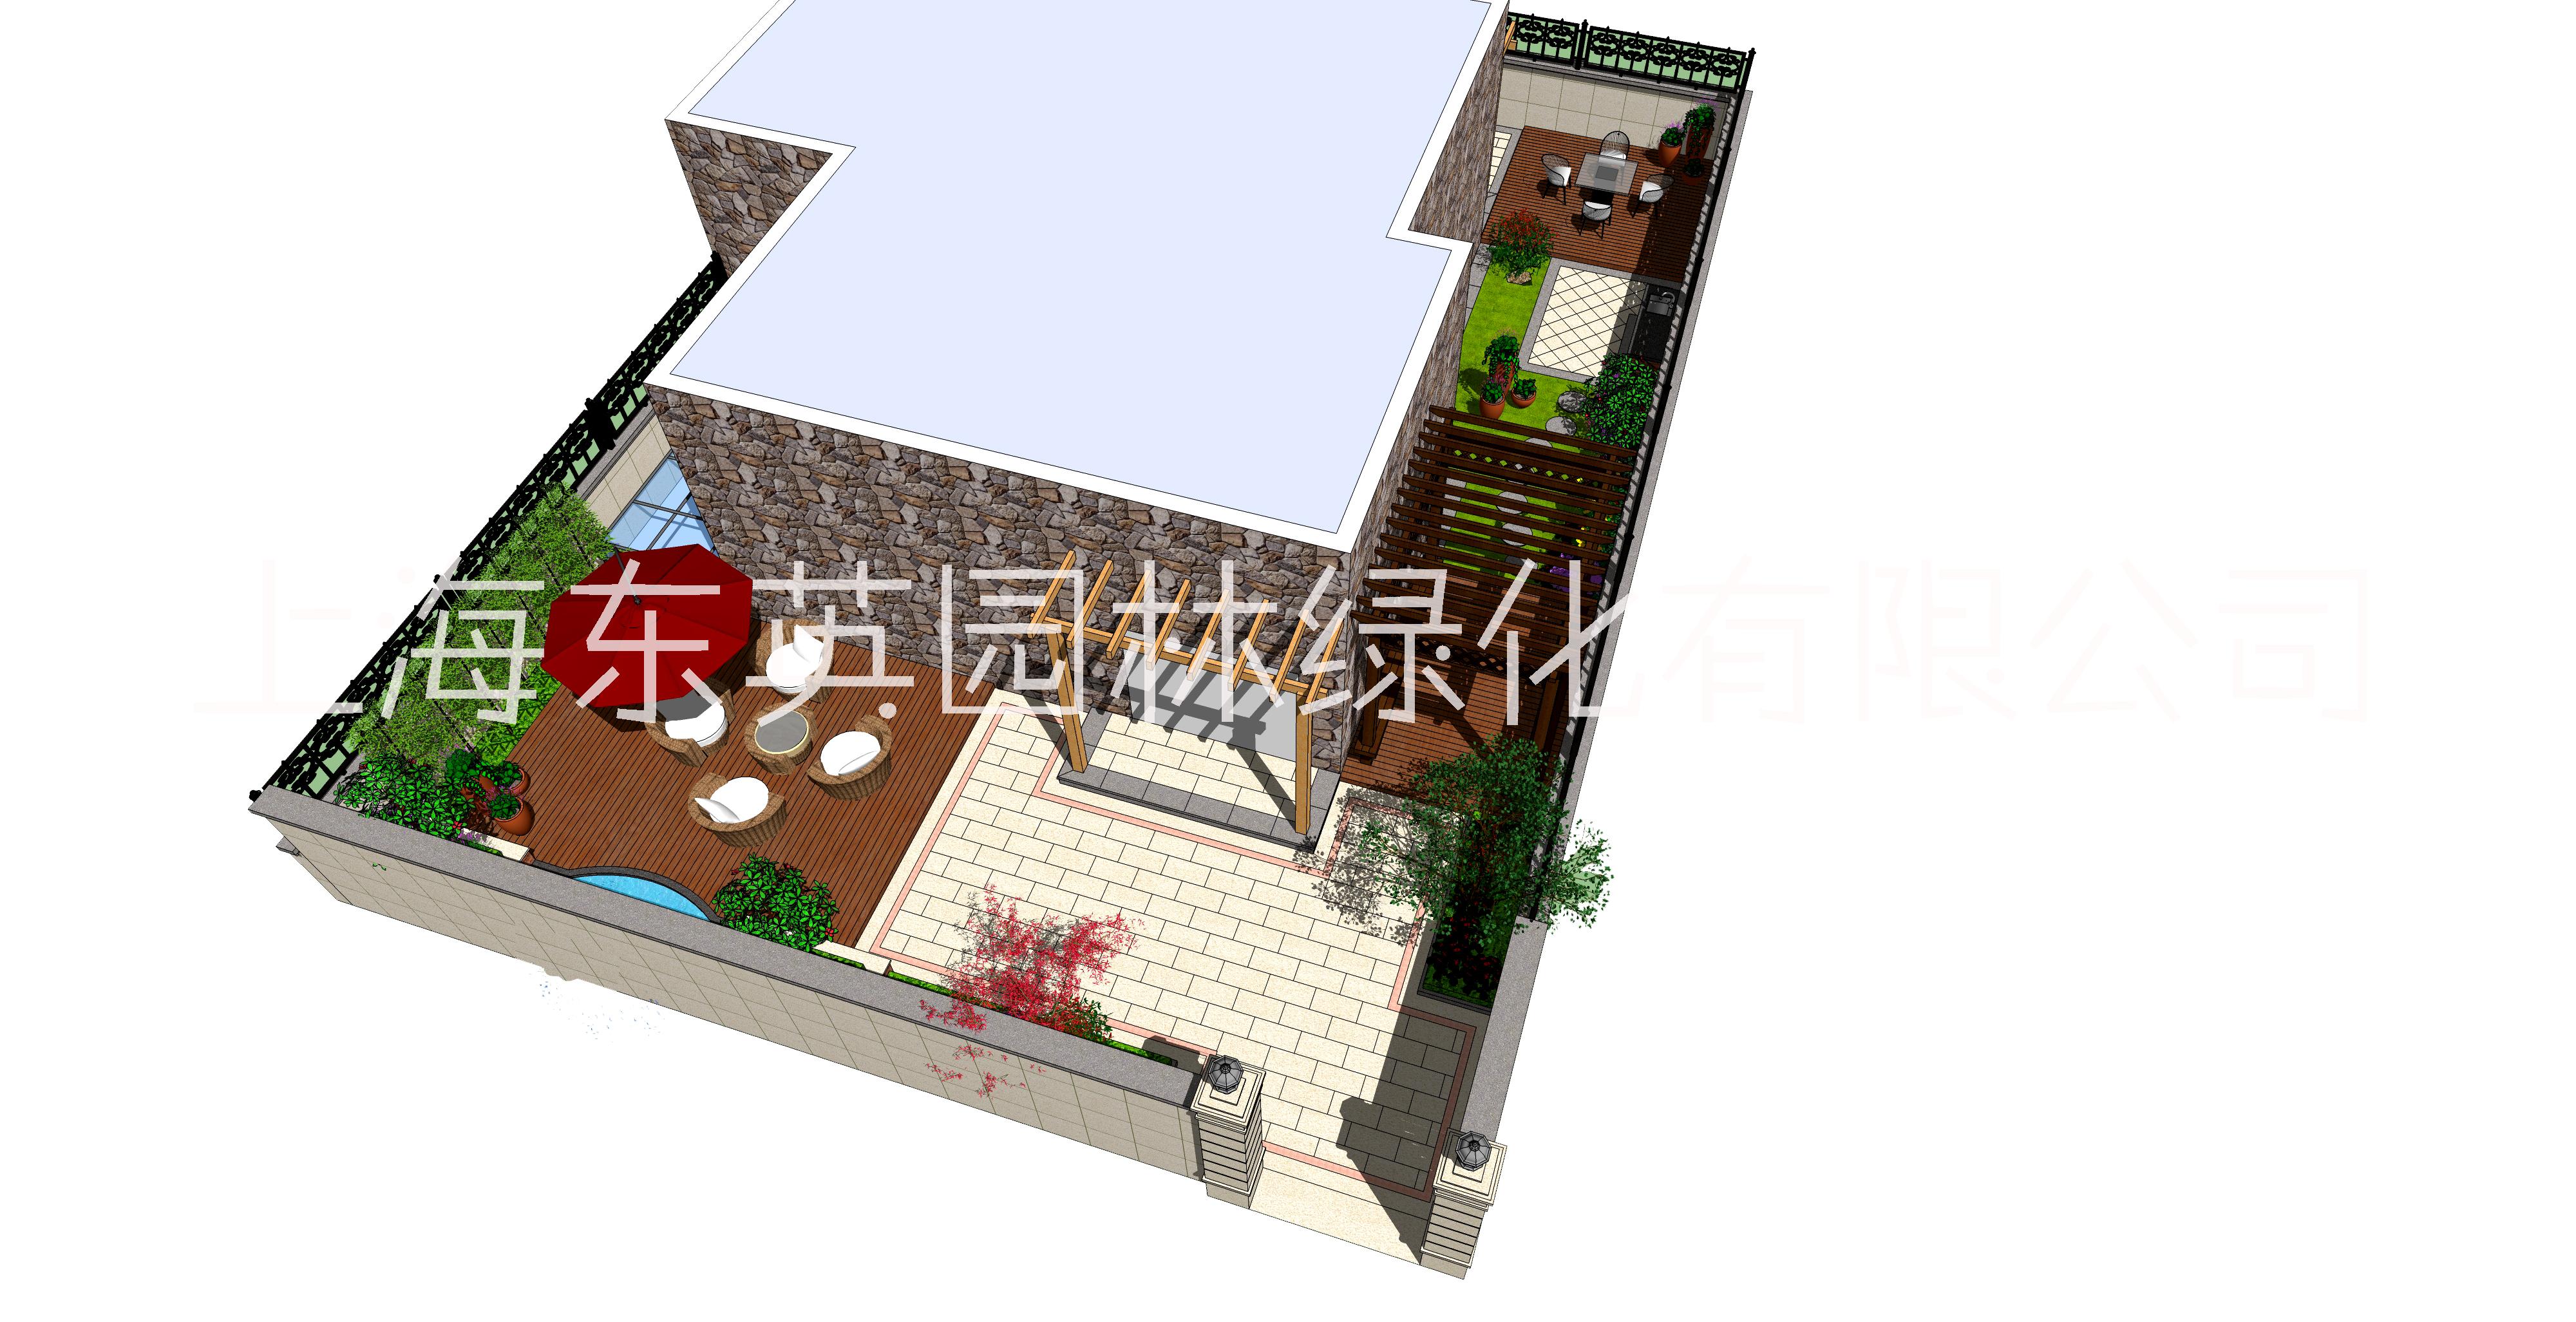 上海庭院设计方案公司,庭院设计方案施工,庭院设计方案多少钱,户外庭院设计方案设计价格,上海庭院设计方案电话图片